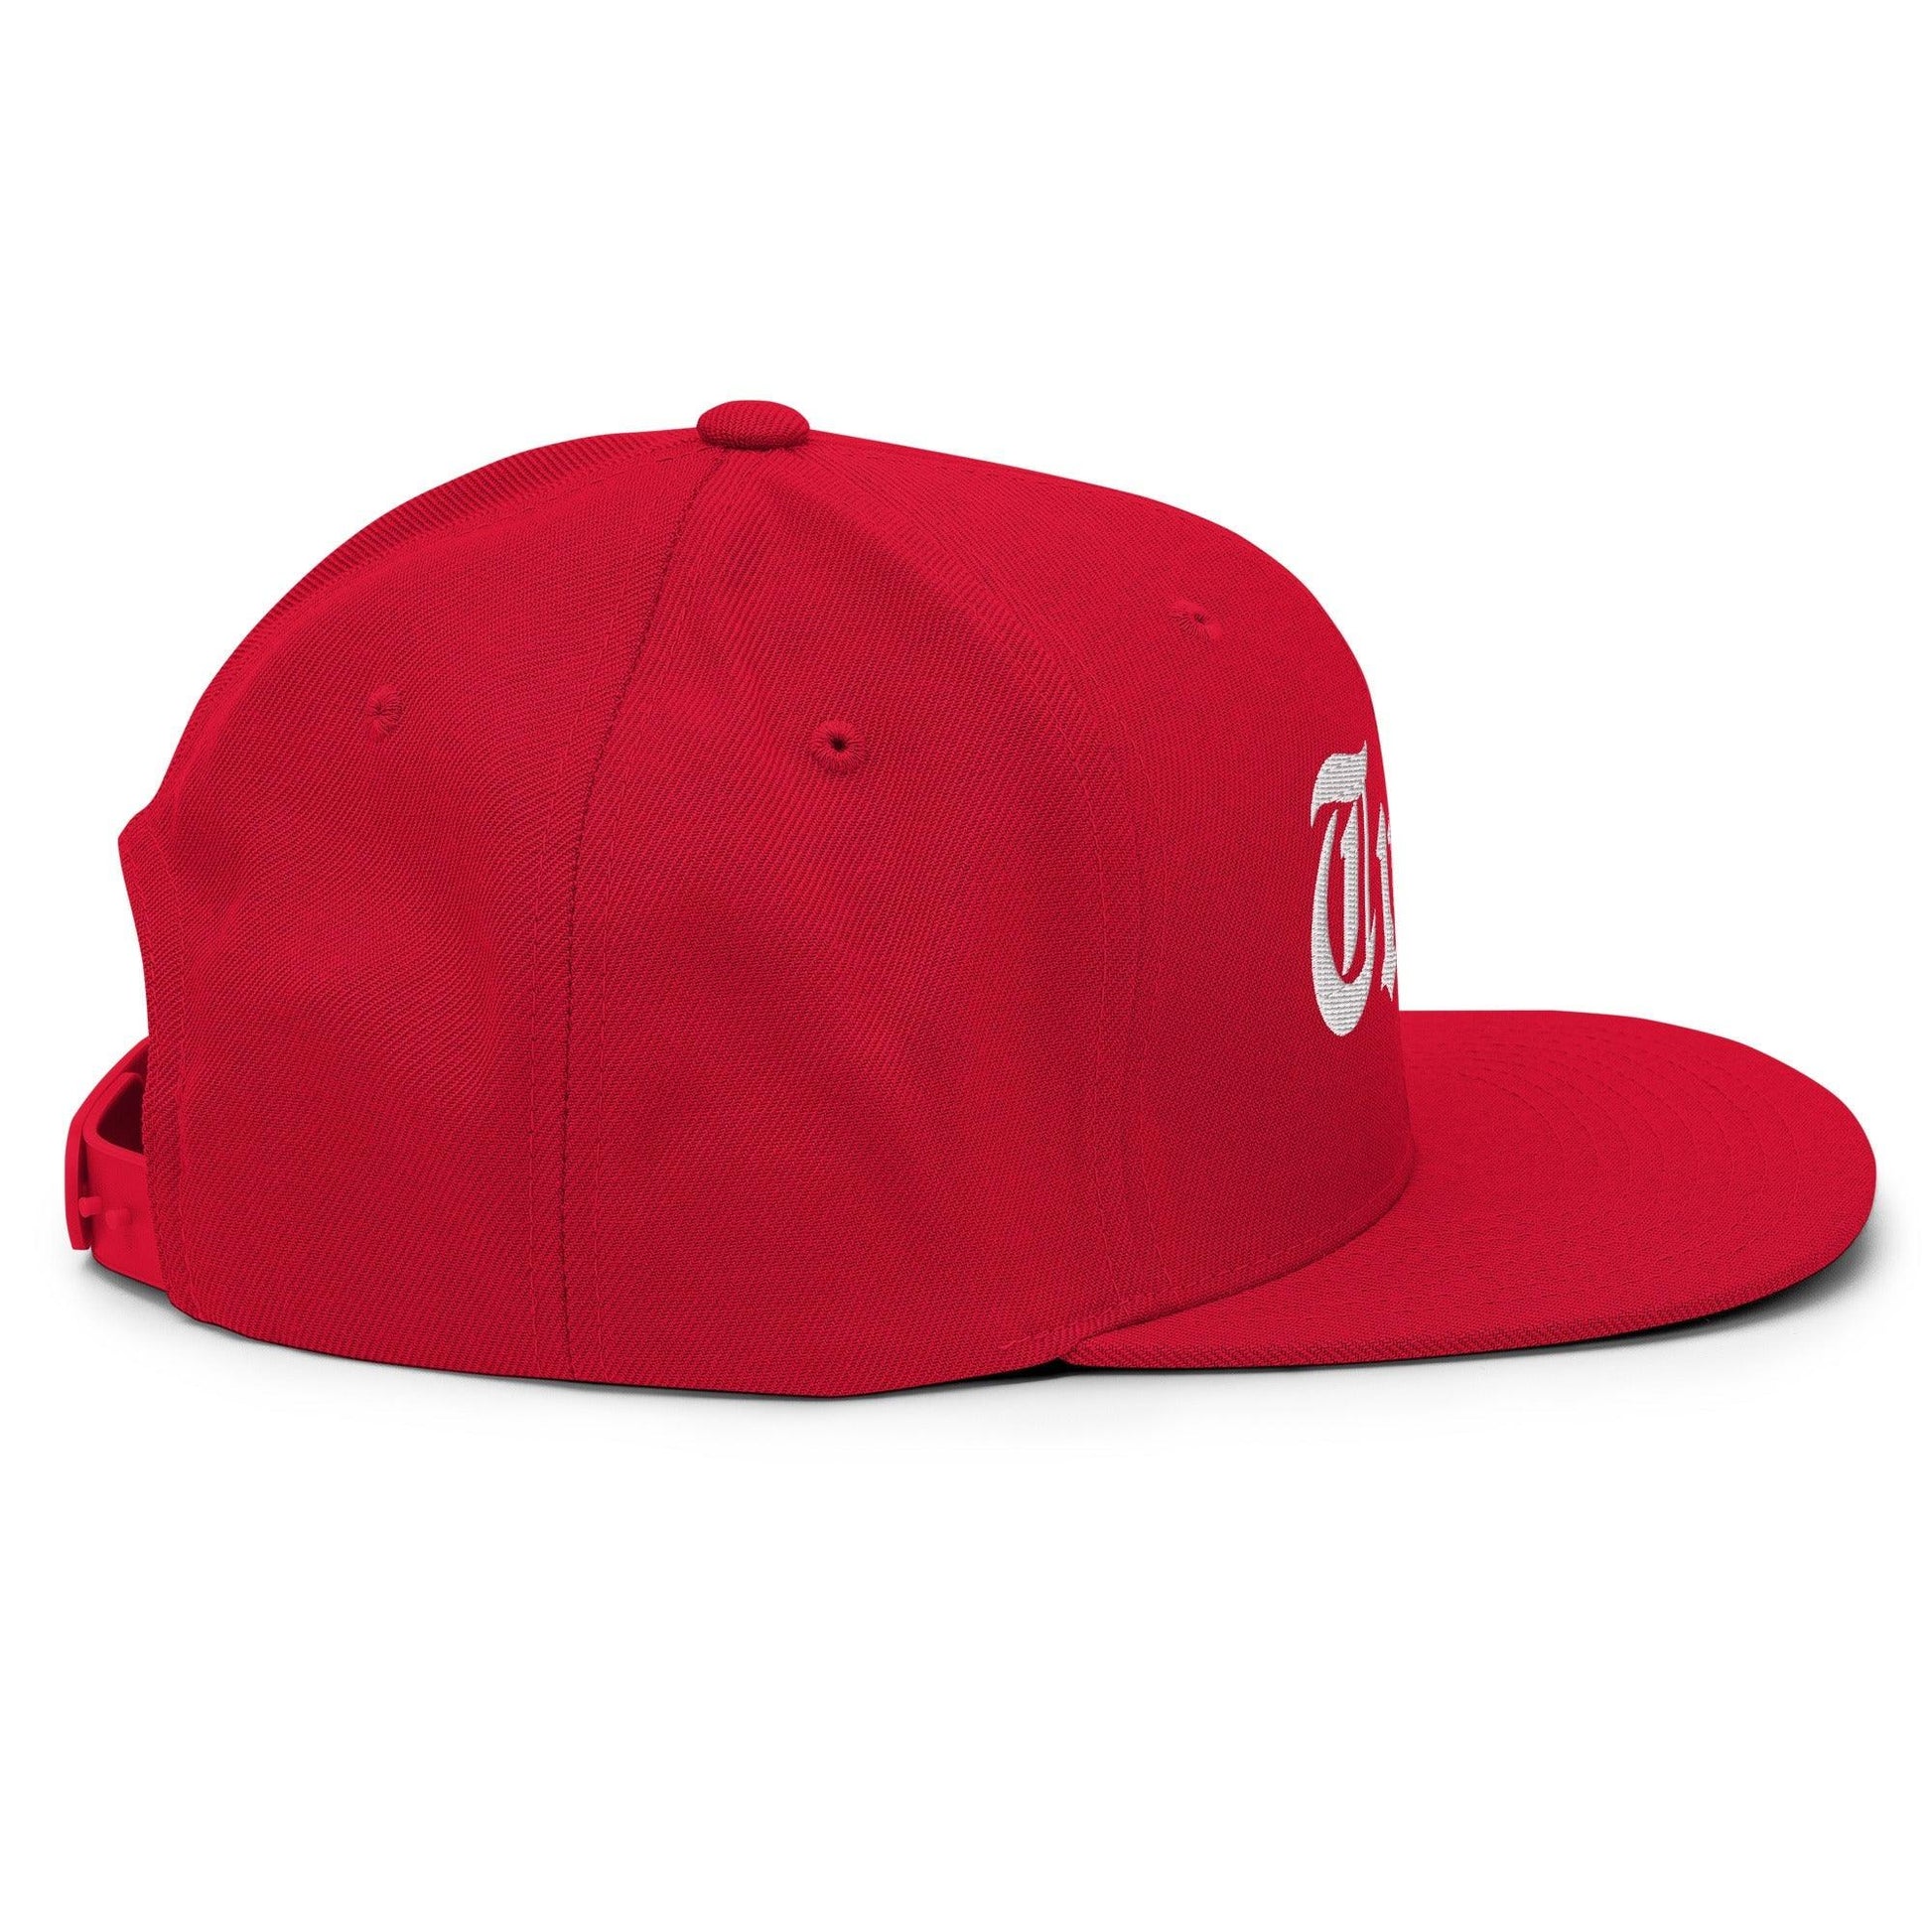 Tulsa OG Old English Snapback Hat Red